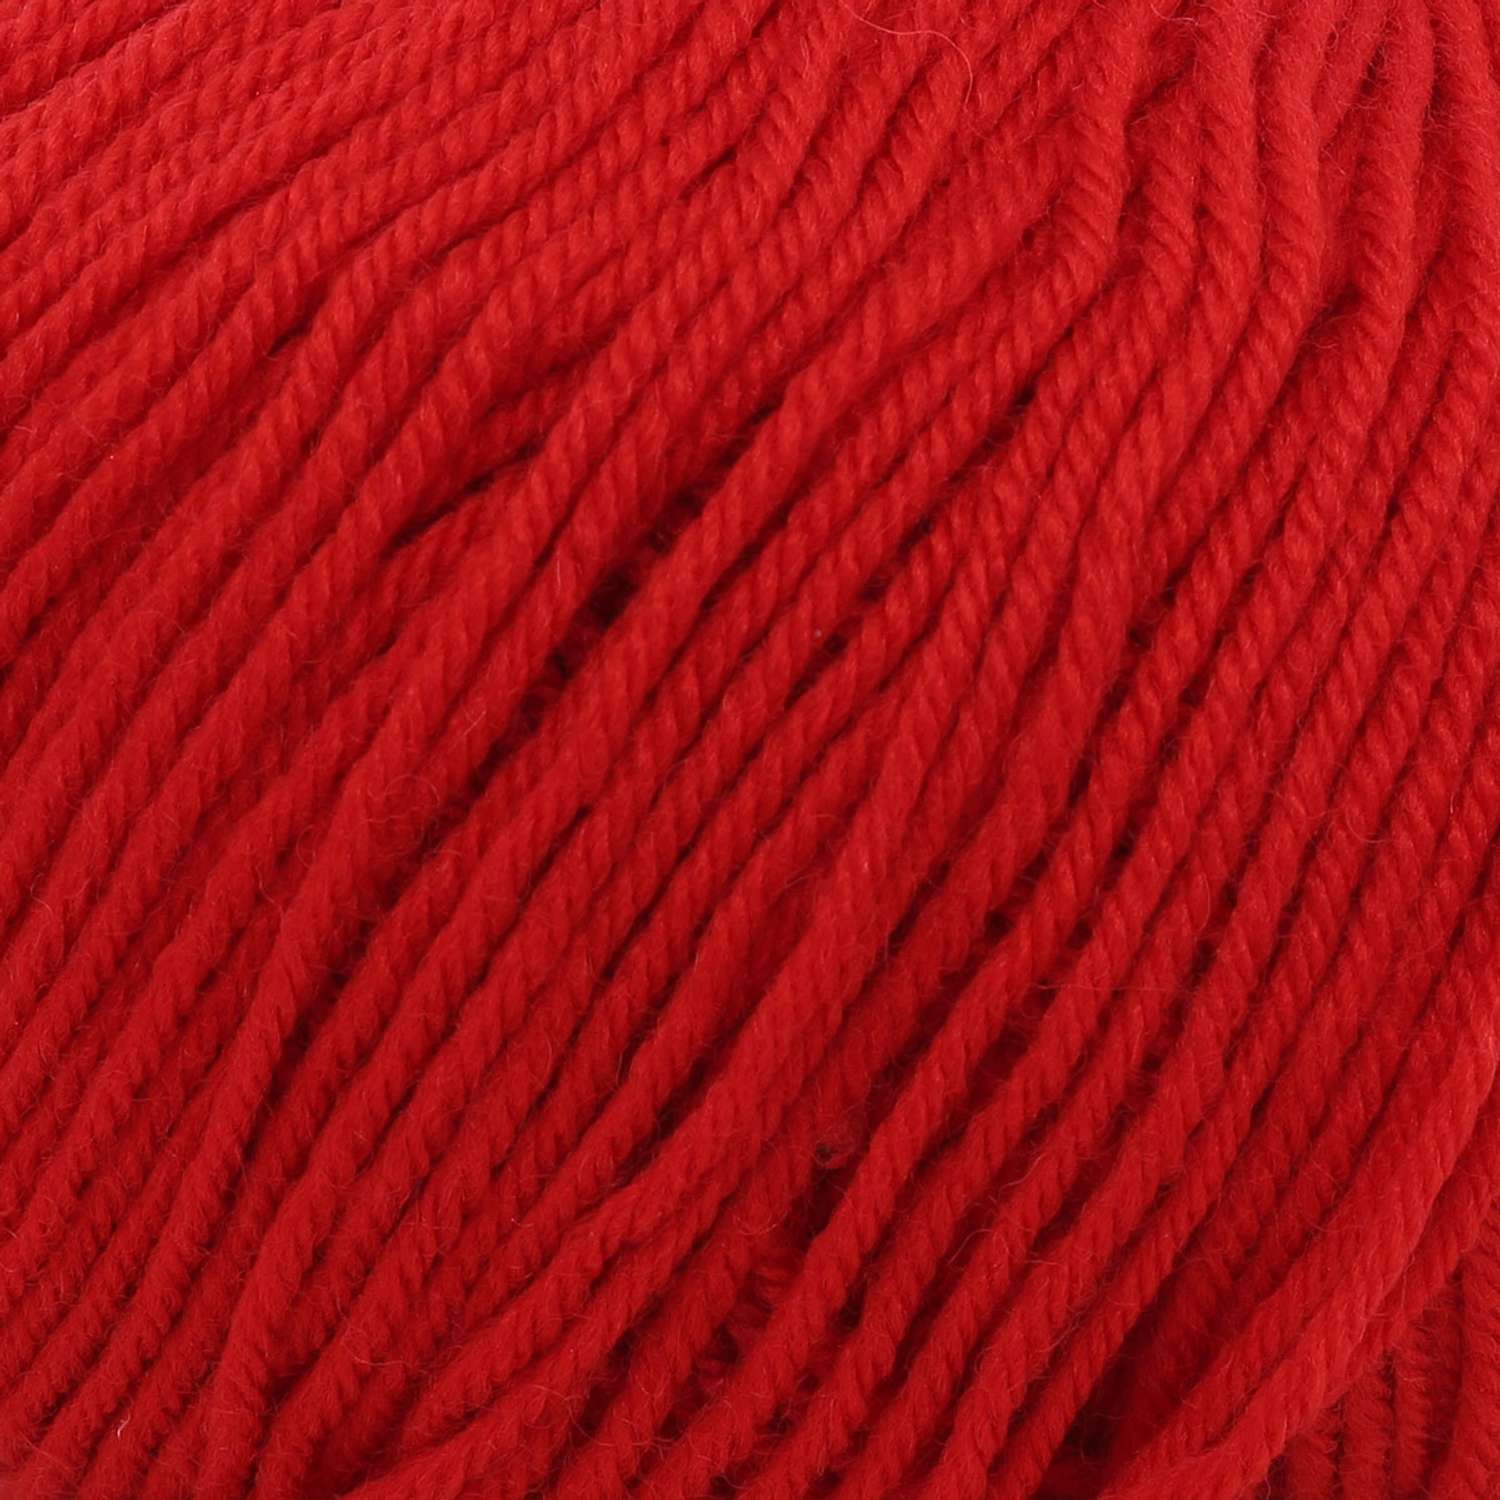 Пряжа для вязания Пехорка детский каприз тёплый 50 гр 125 м мериносовая шерсть фибра мягкая 06 красный 10 мотков - фото 4